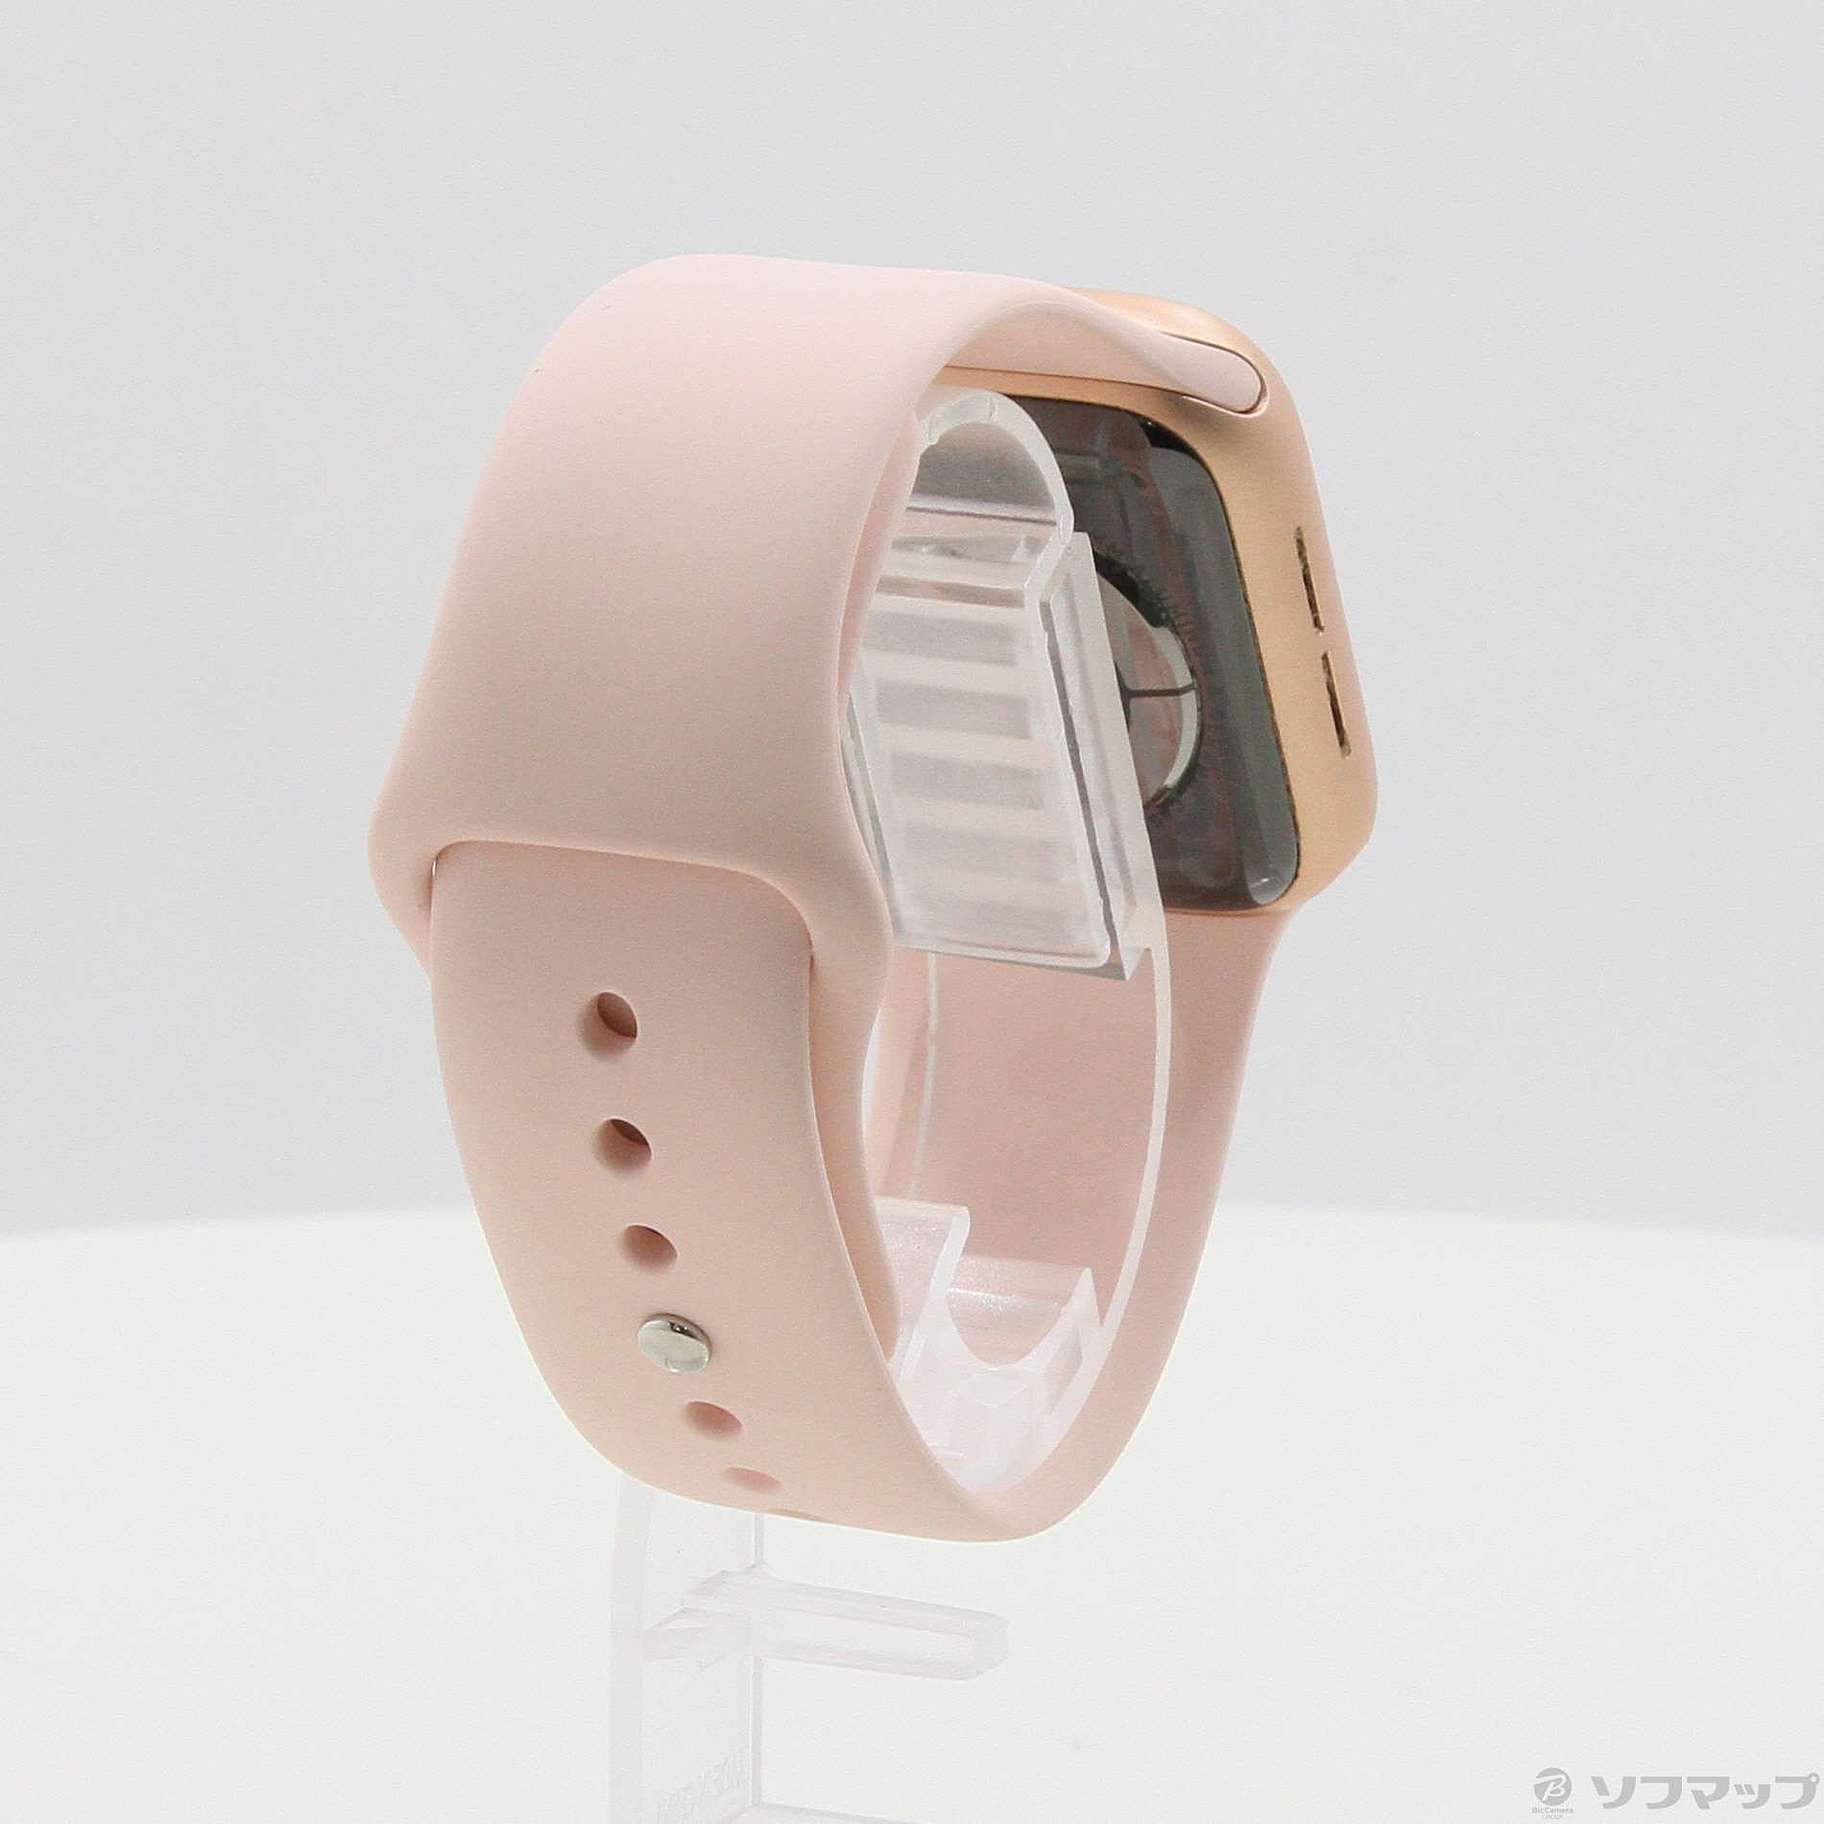 【新作日本製】Apple Watch series 5 40mm ピンクゴールドアルミニウム 時計